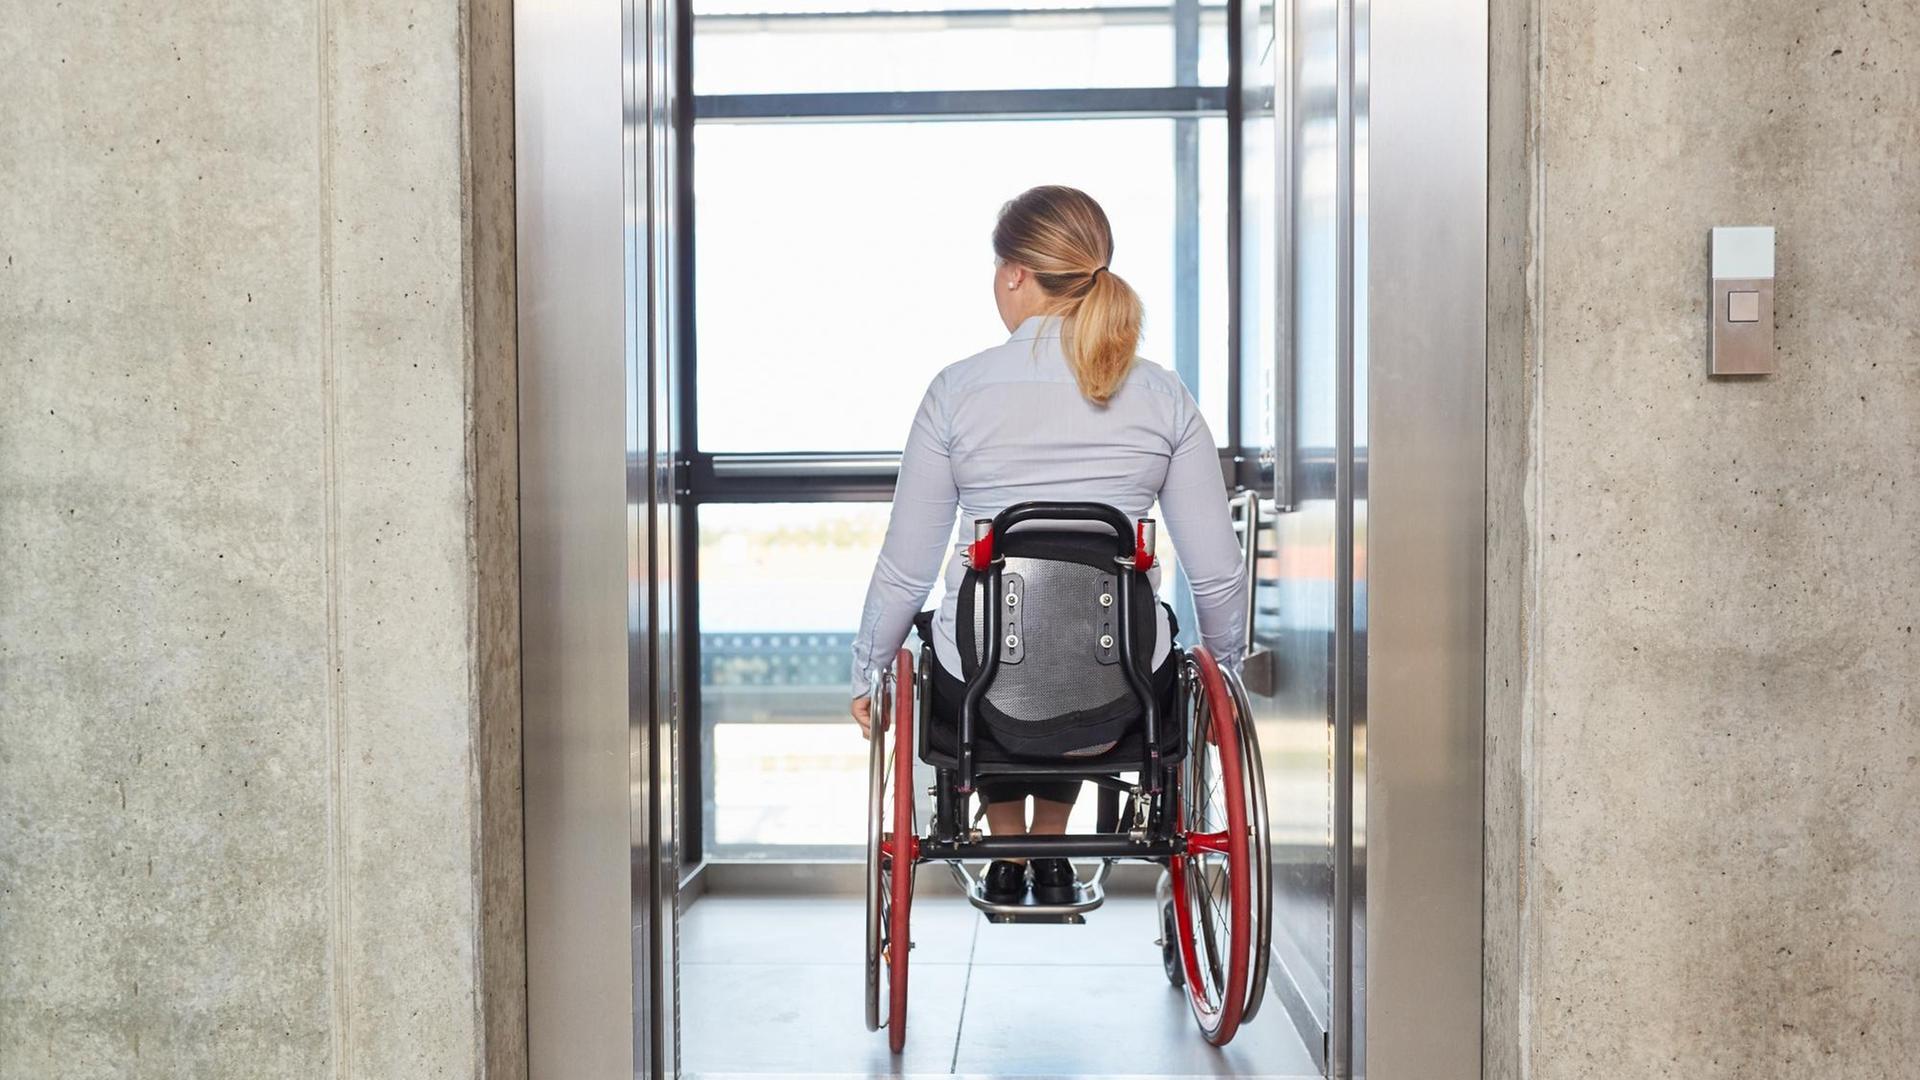 Eine Geschäftsfrau im Rollstuhl fährt mit dem Fahrstuhl in einem Geschäftsgebäude.